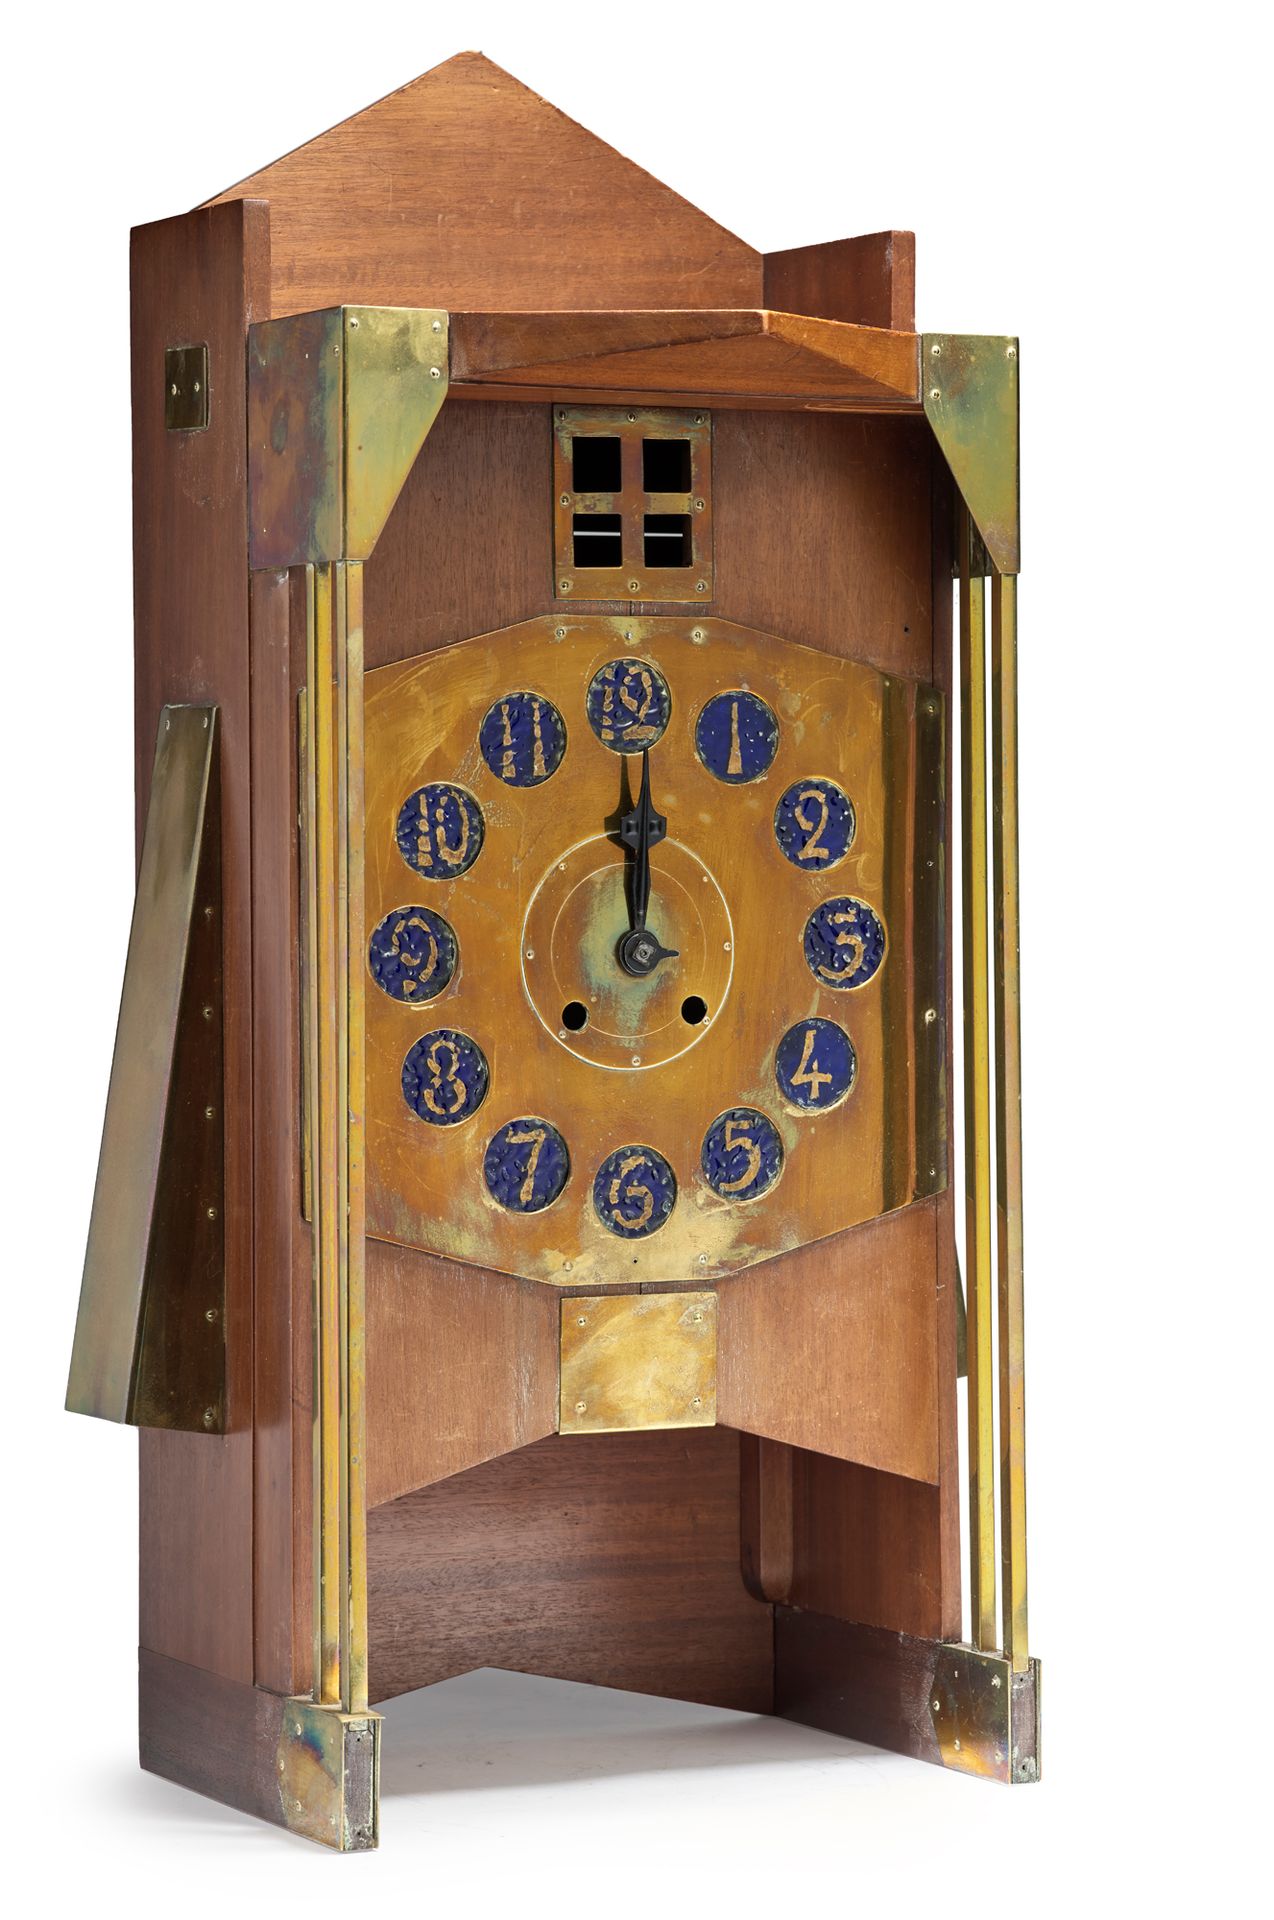 Gustave Serrurier-Bovy (1858-1910) 
Orologio da parete detto "Moulin clock" con &hellip;